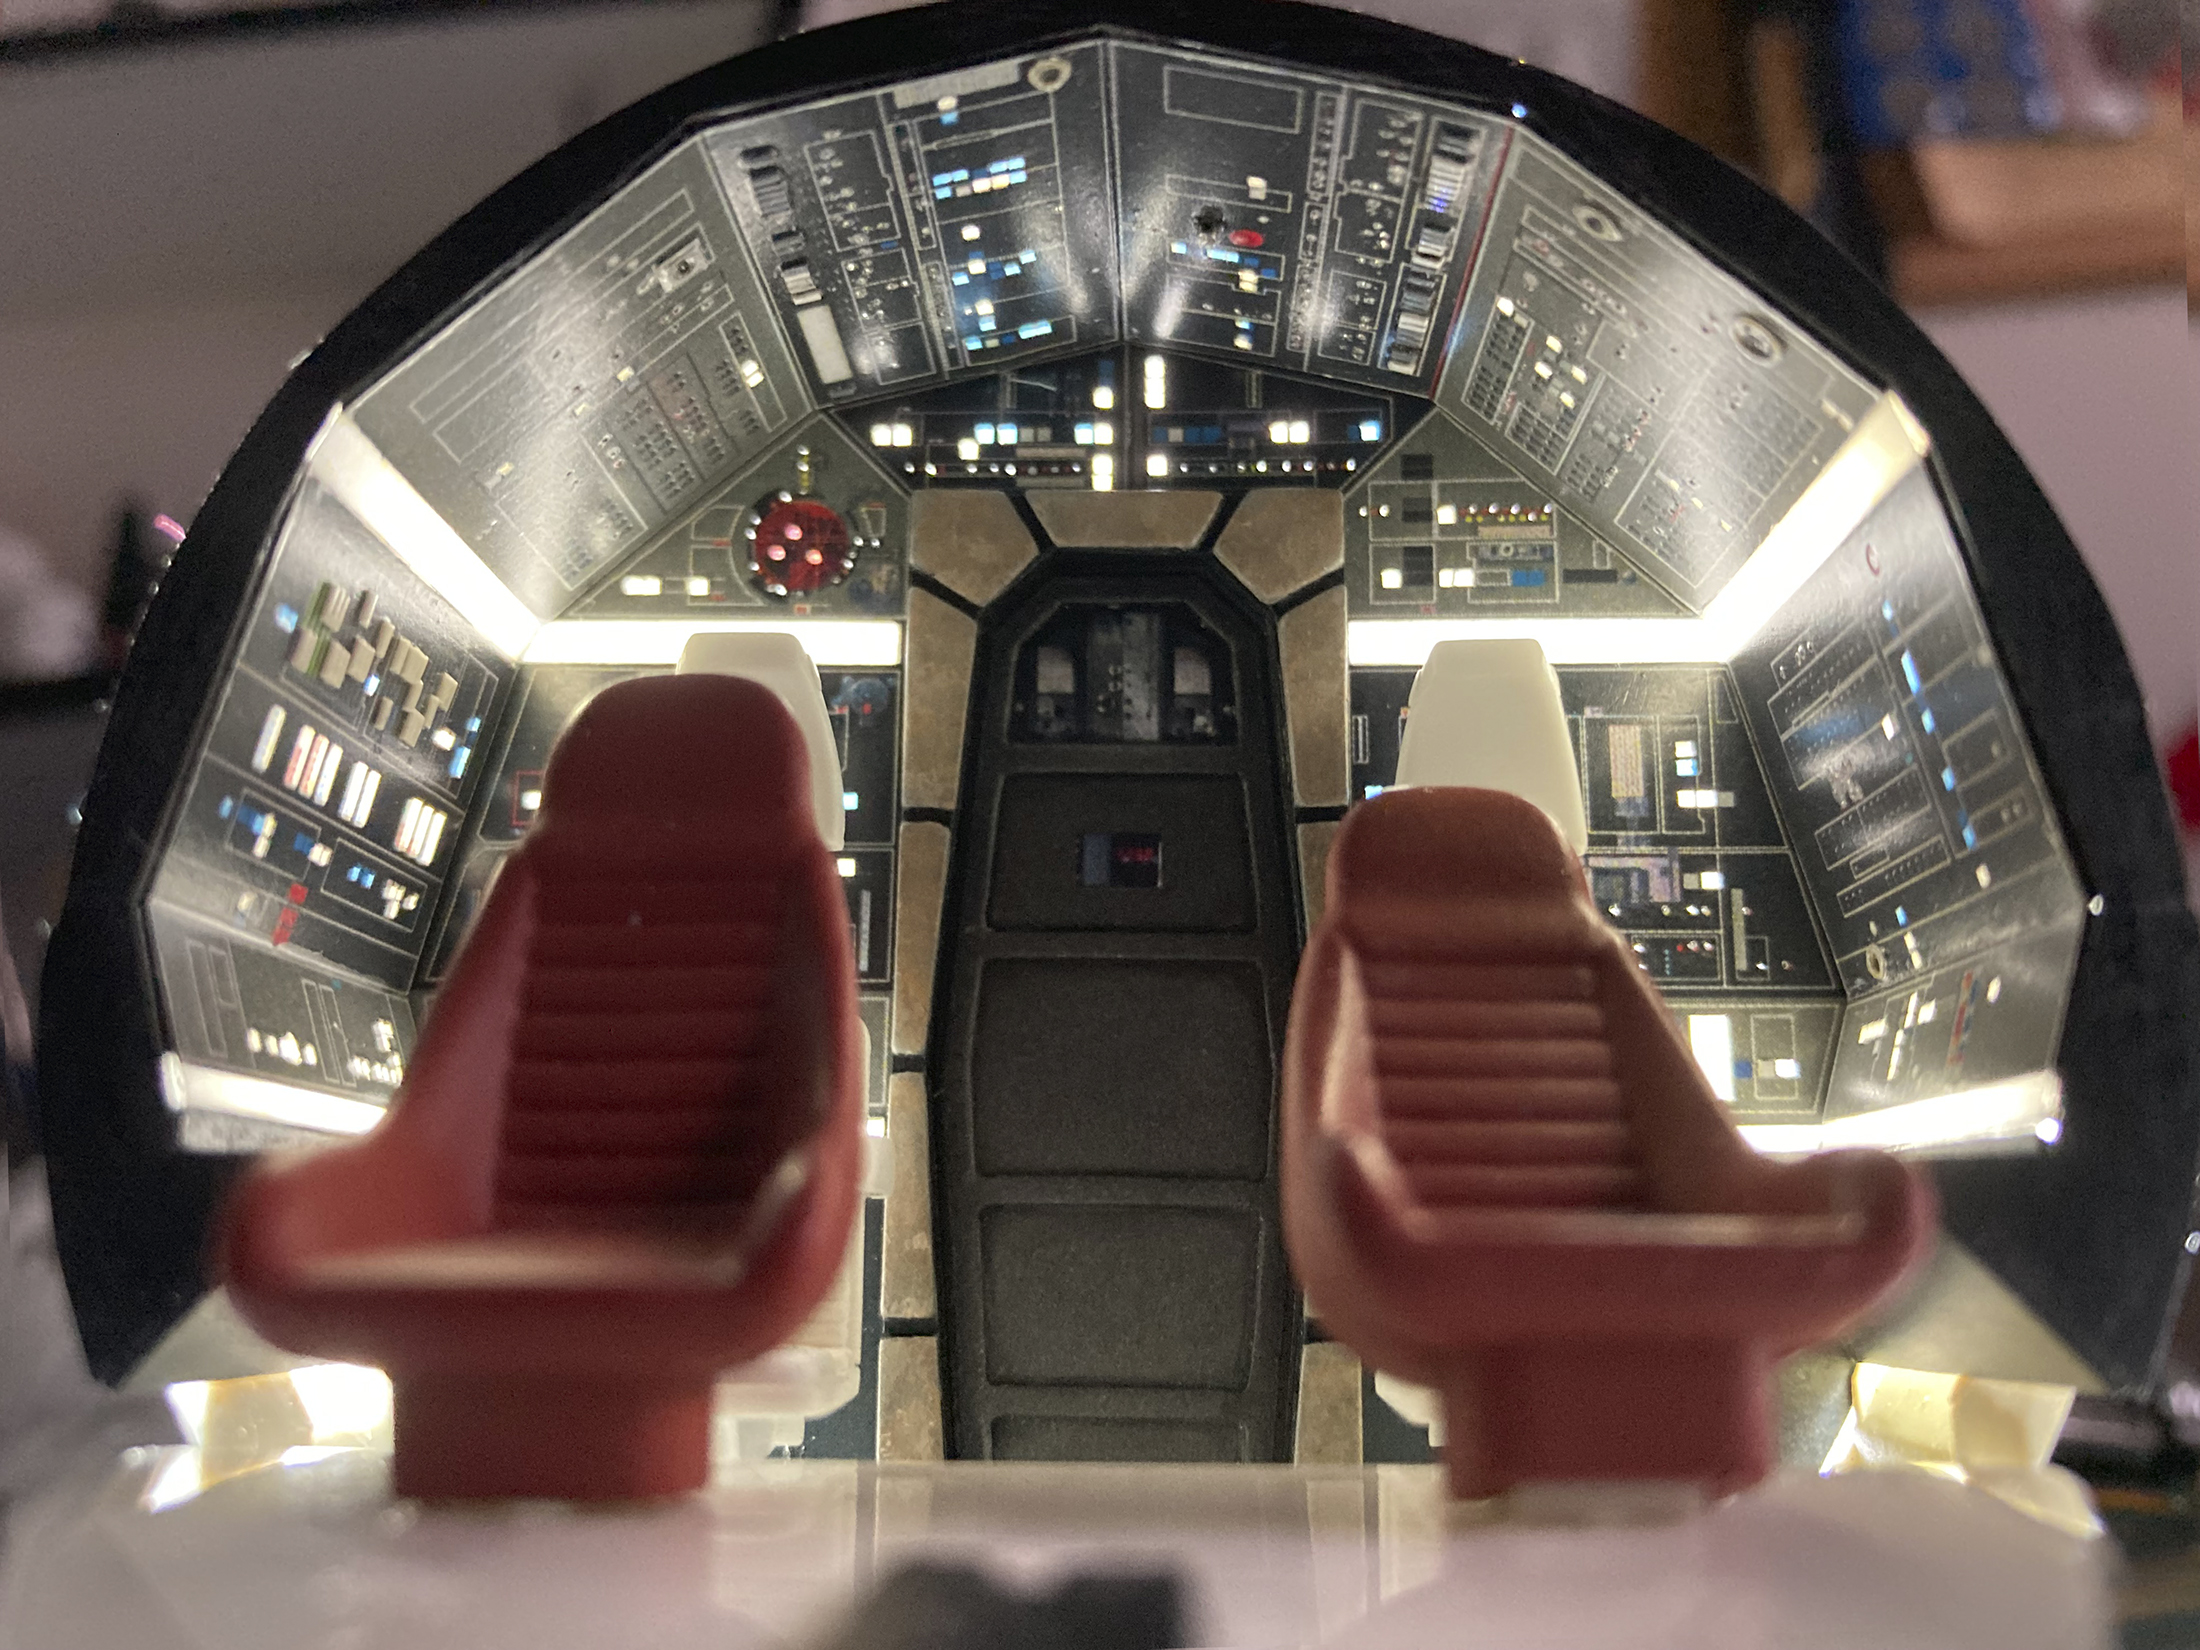 0000-Moska-Deagostini-Falcon-cockpit-01.jpg